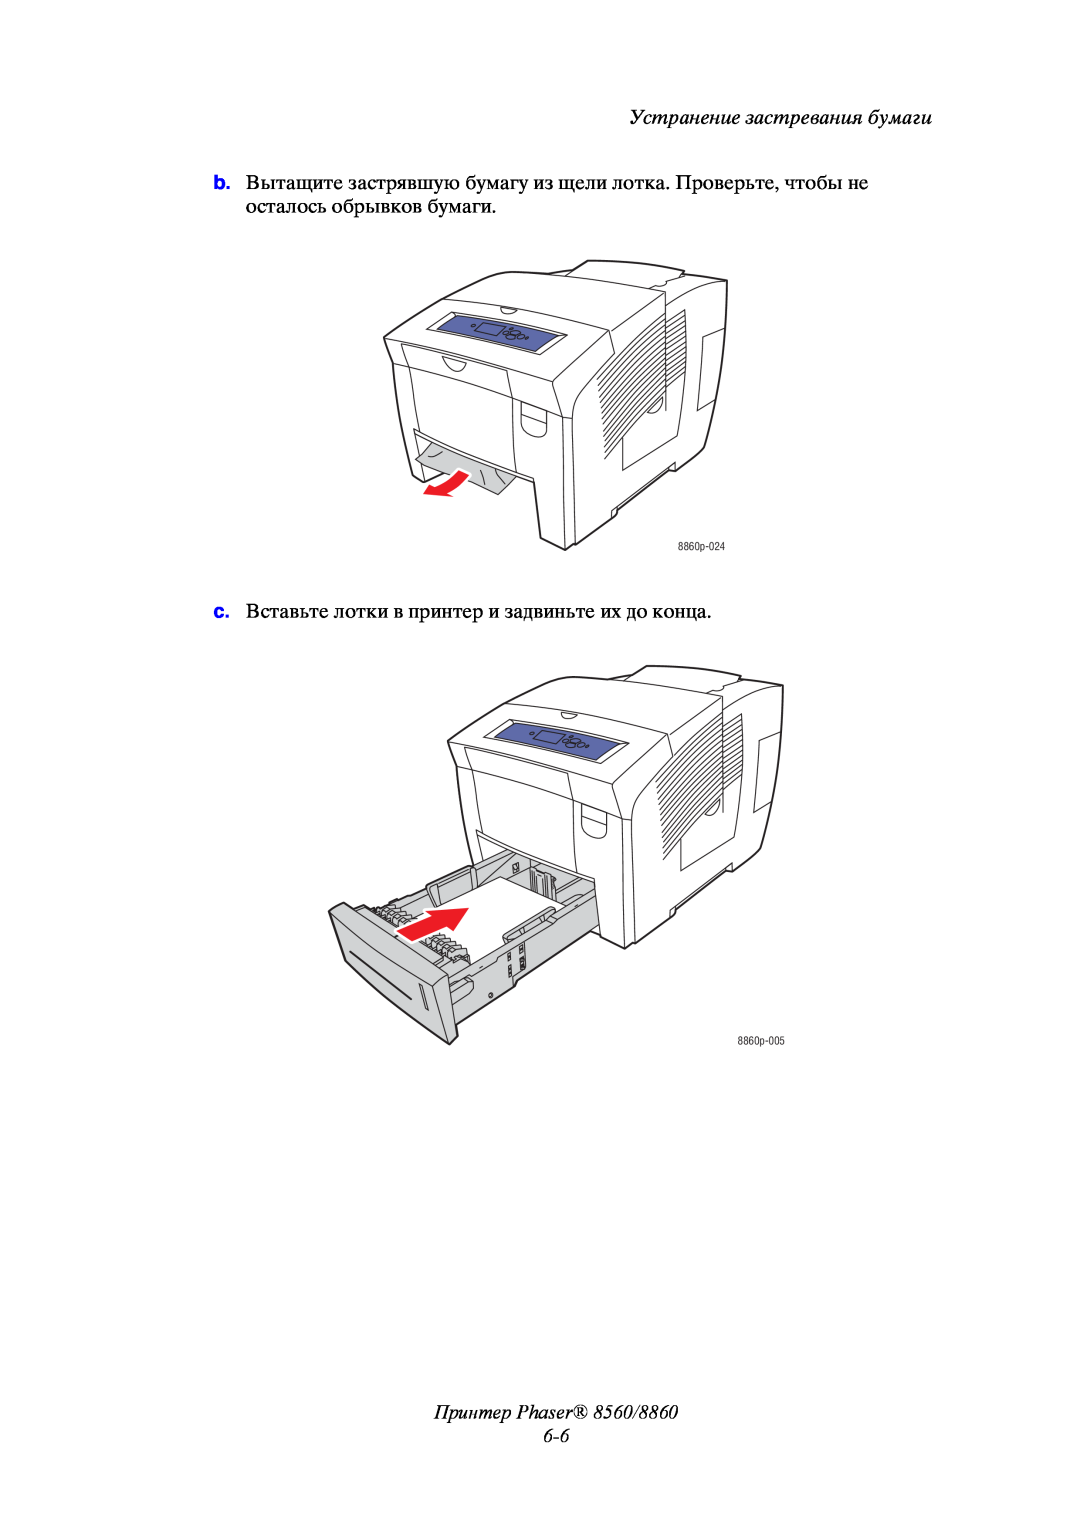 Xerox Принтер Phaser 8560/8860 6-6, Устранение застревания бумаги, c. Вставьте лотки в принтер и задвиньте их до конца 